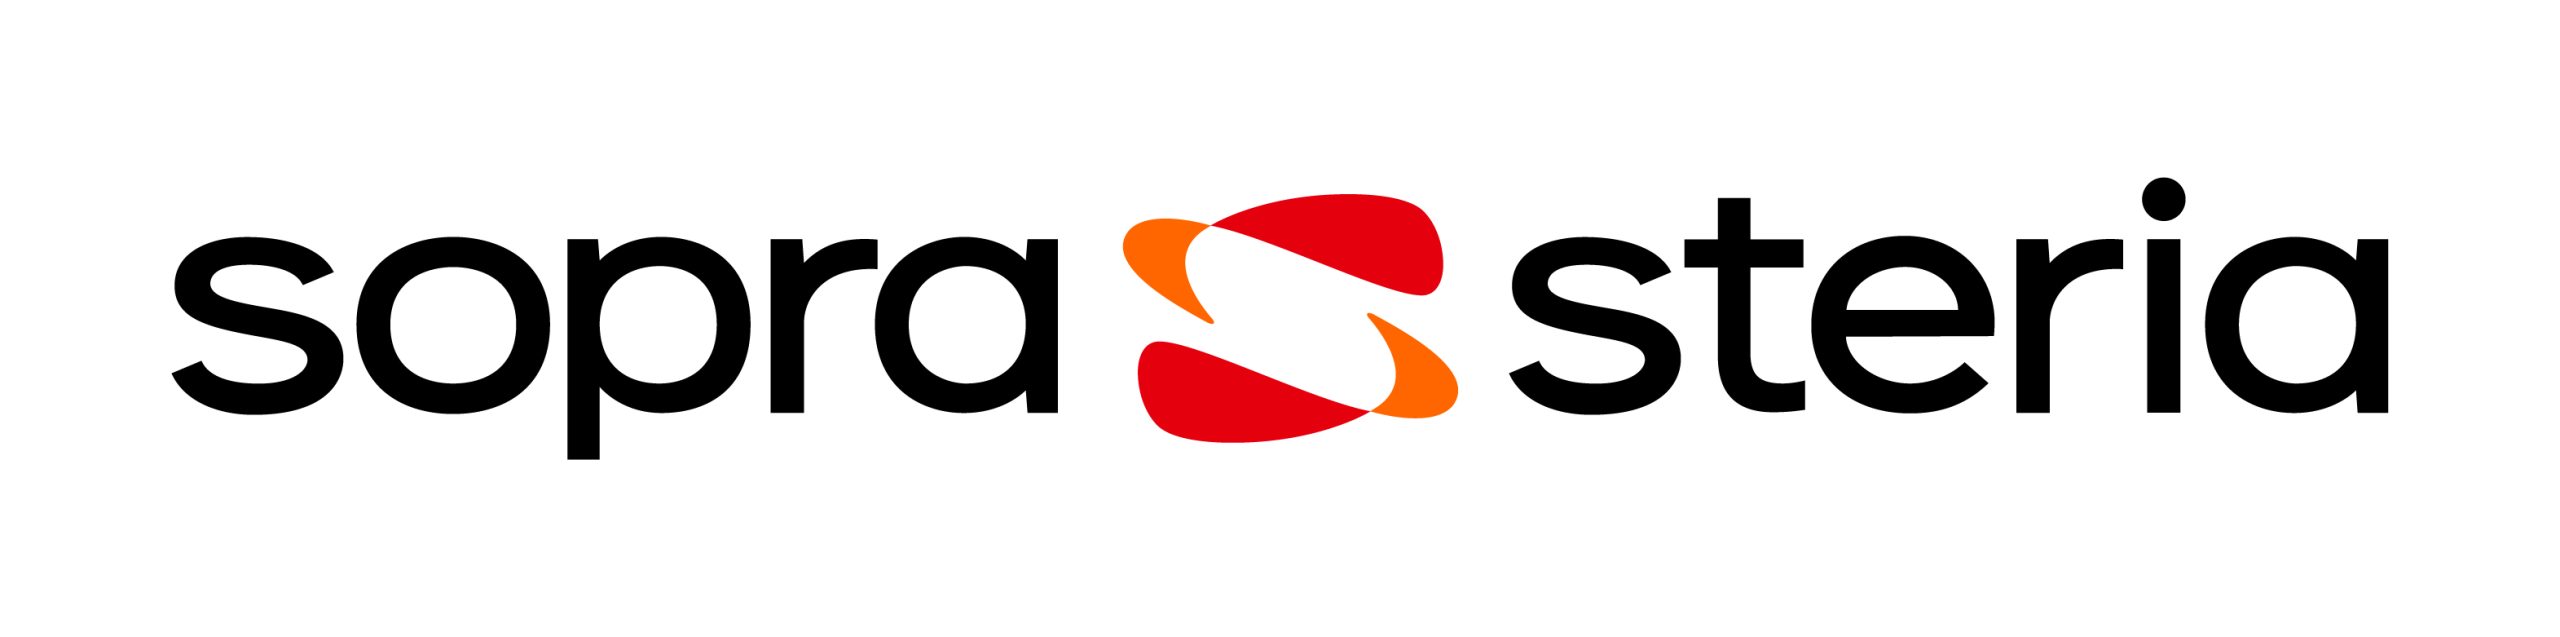 SOPRASTERIA logo